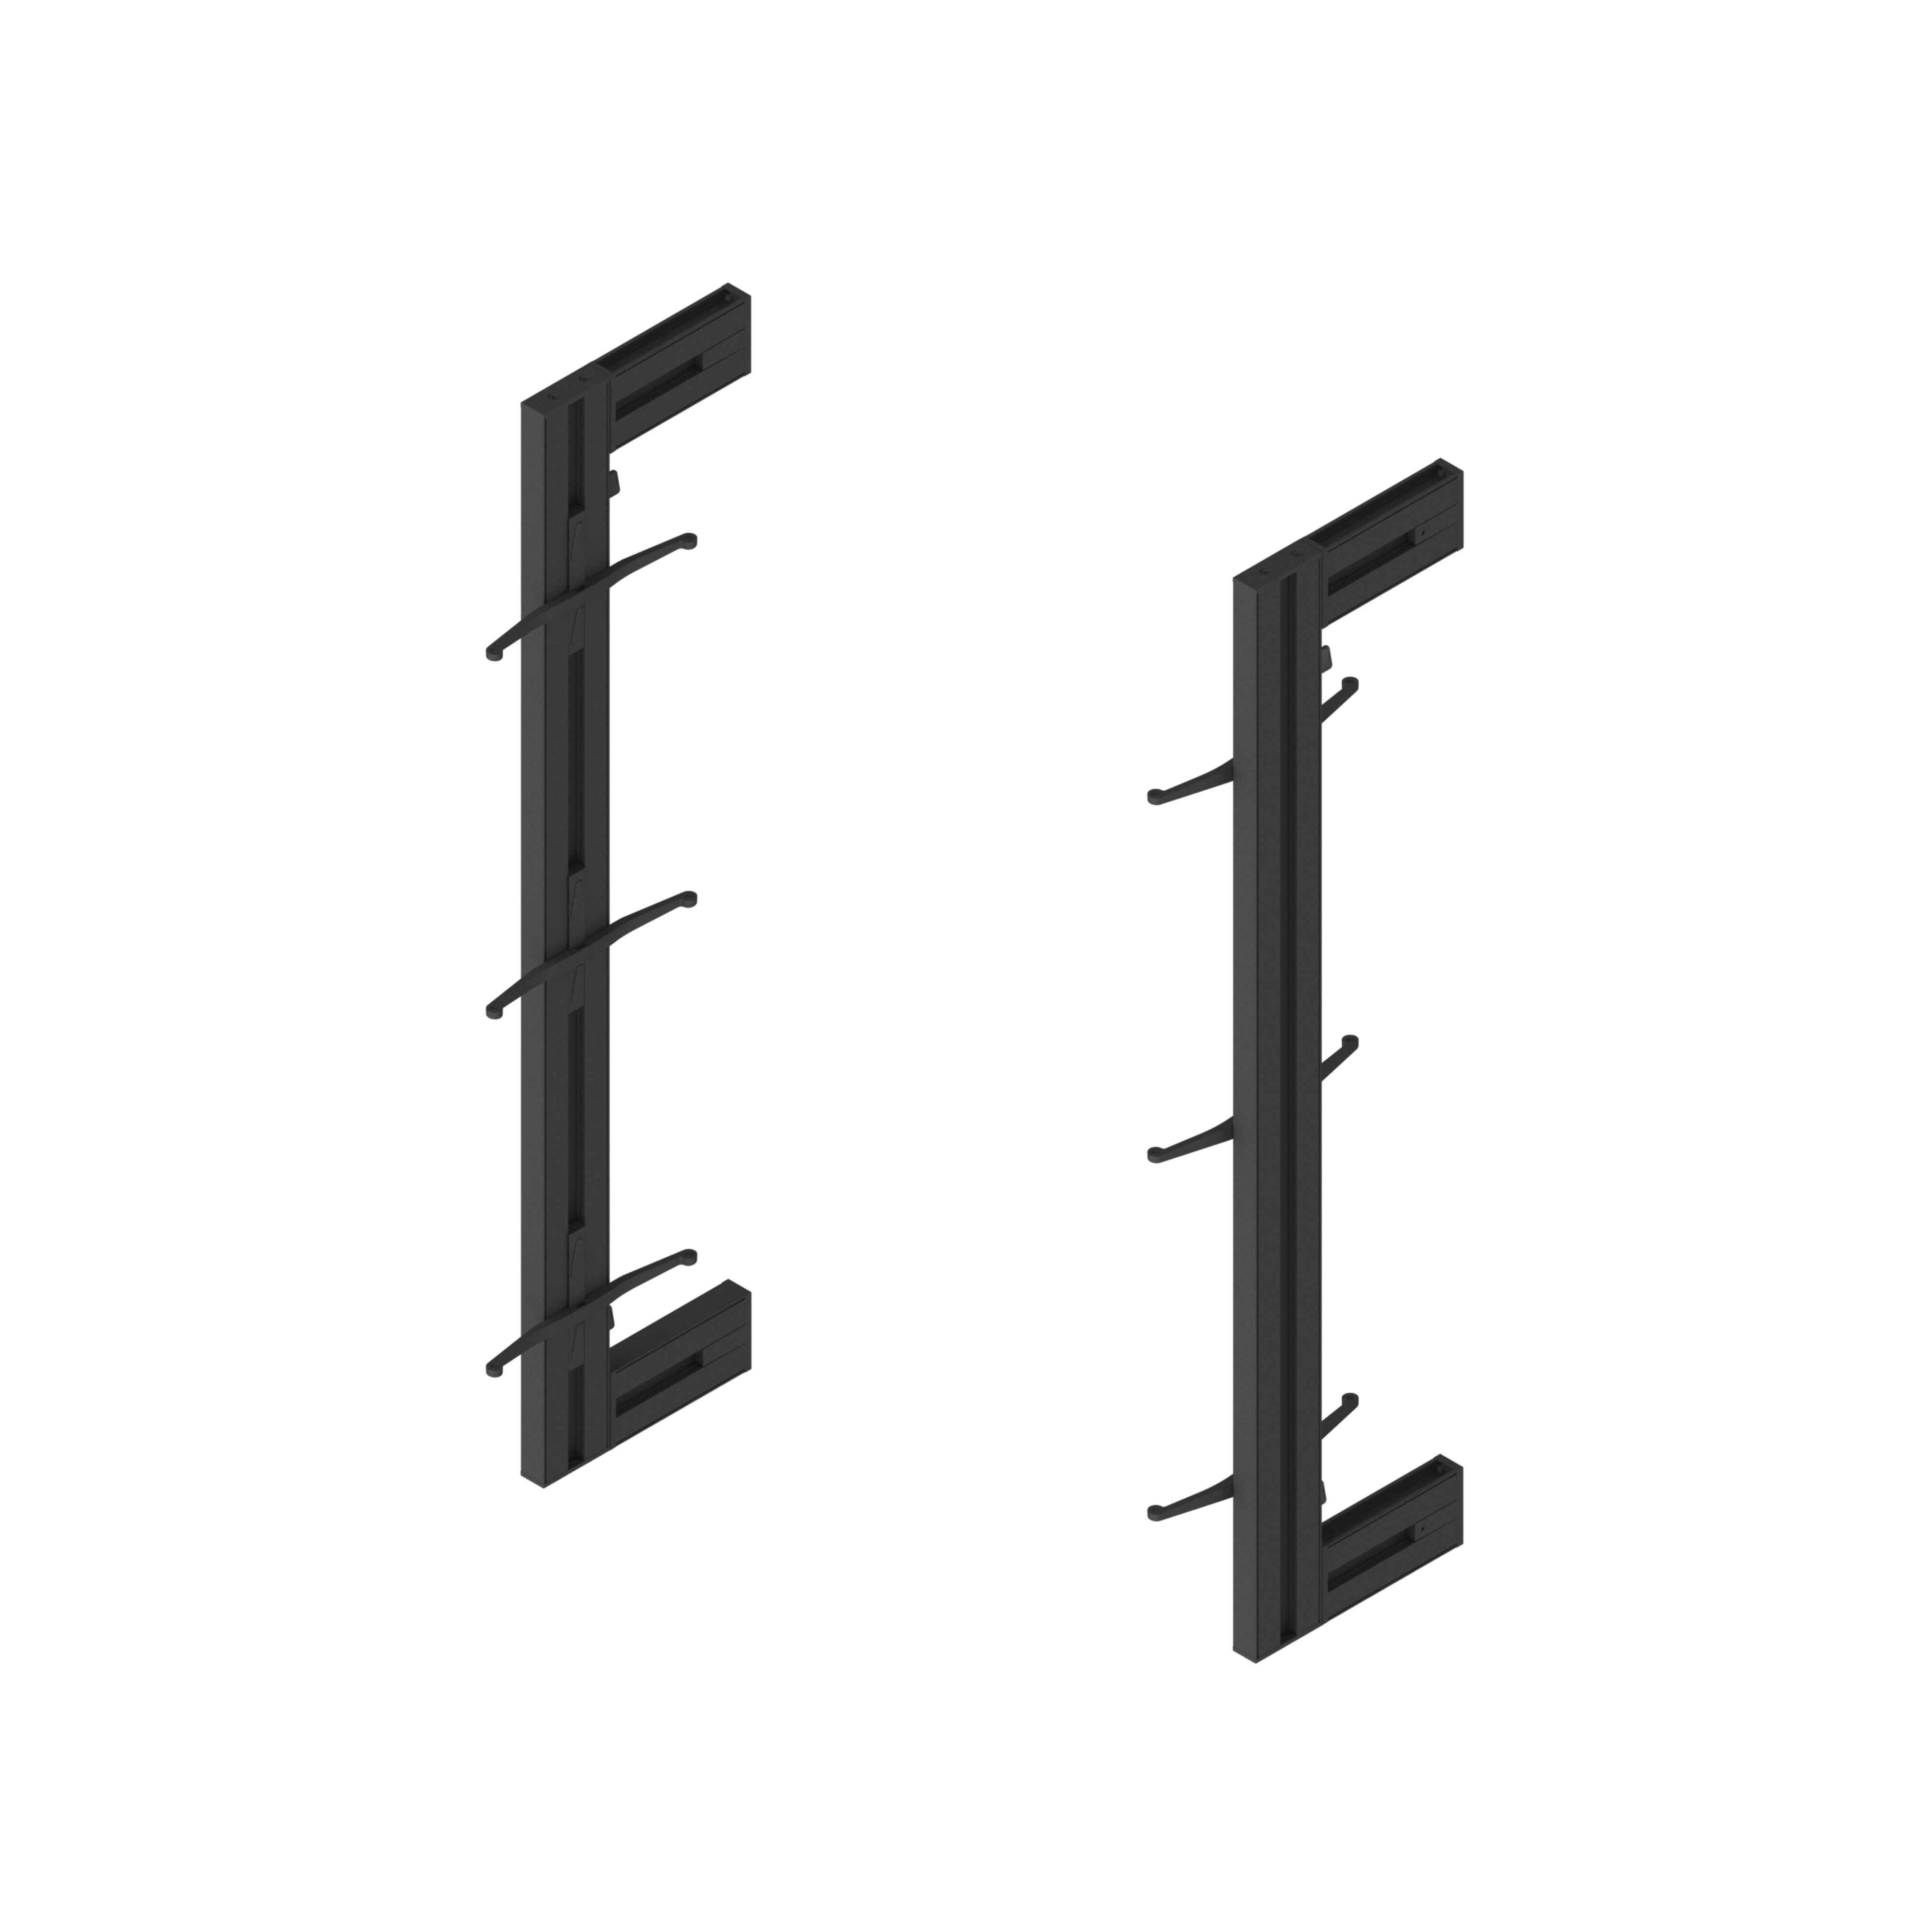 Kit estructura modular Zero con herrajes para el montaje de fijación a pared, Pintado negro texturizado, 1 kit